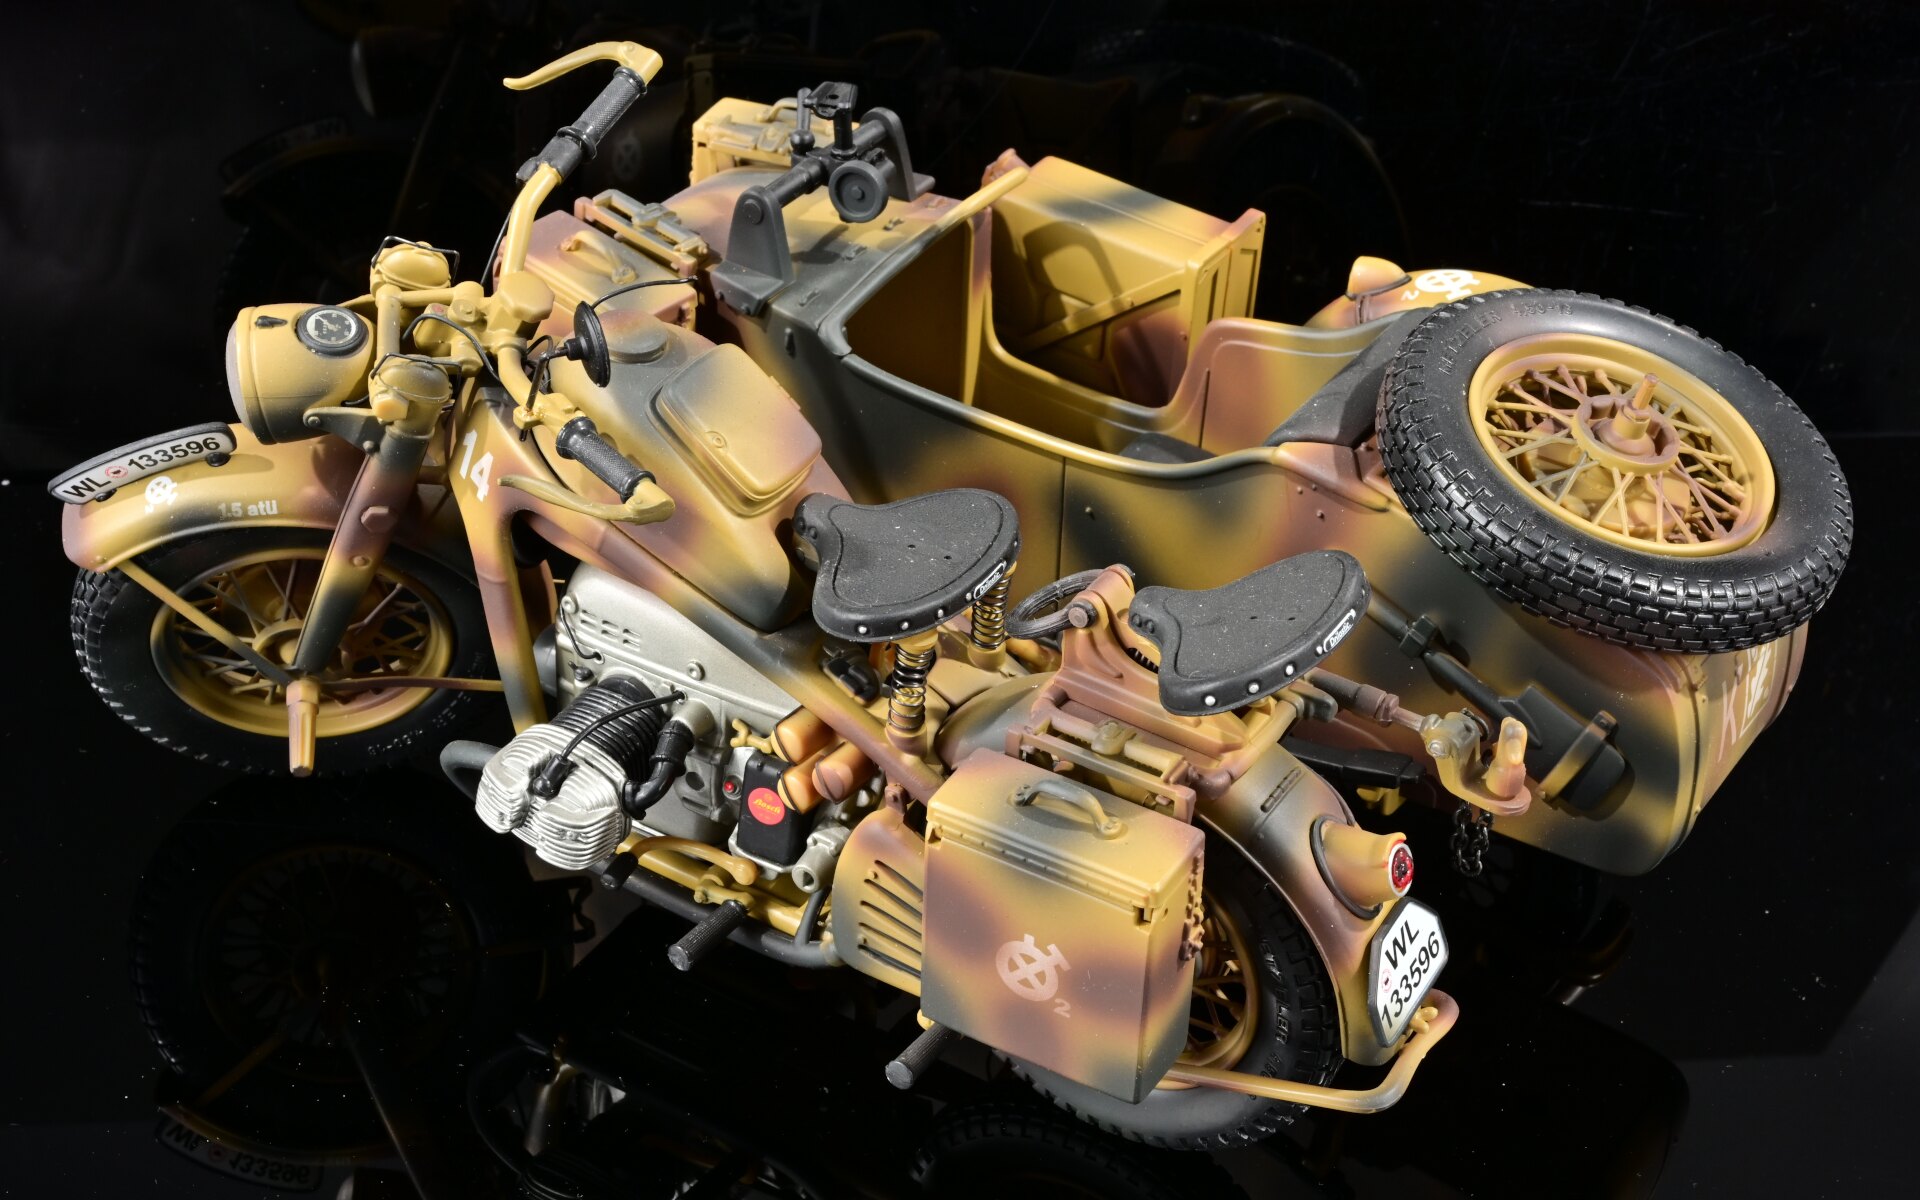 4 x Motorrad mit Beiwagen, Maßstab 1:10, verschiedene Farben und Modelle, 20. / 21. Jahrhundert, sc - Image 5 of 17